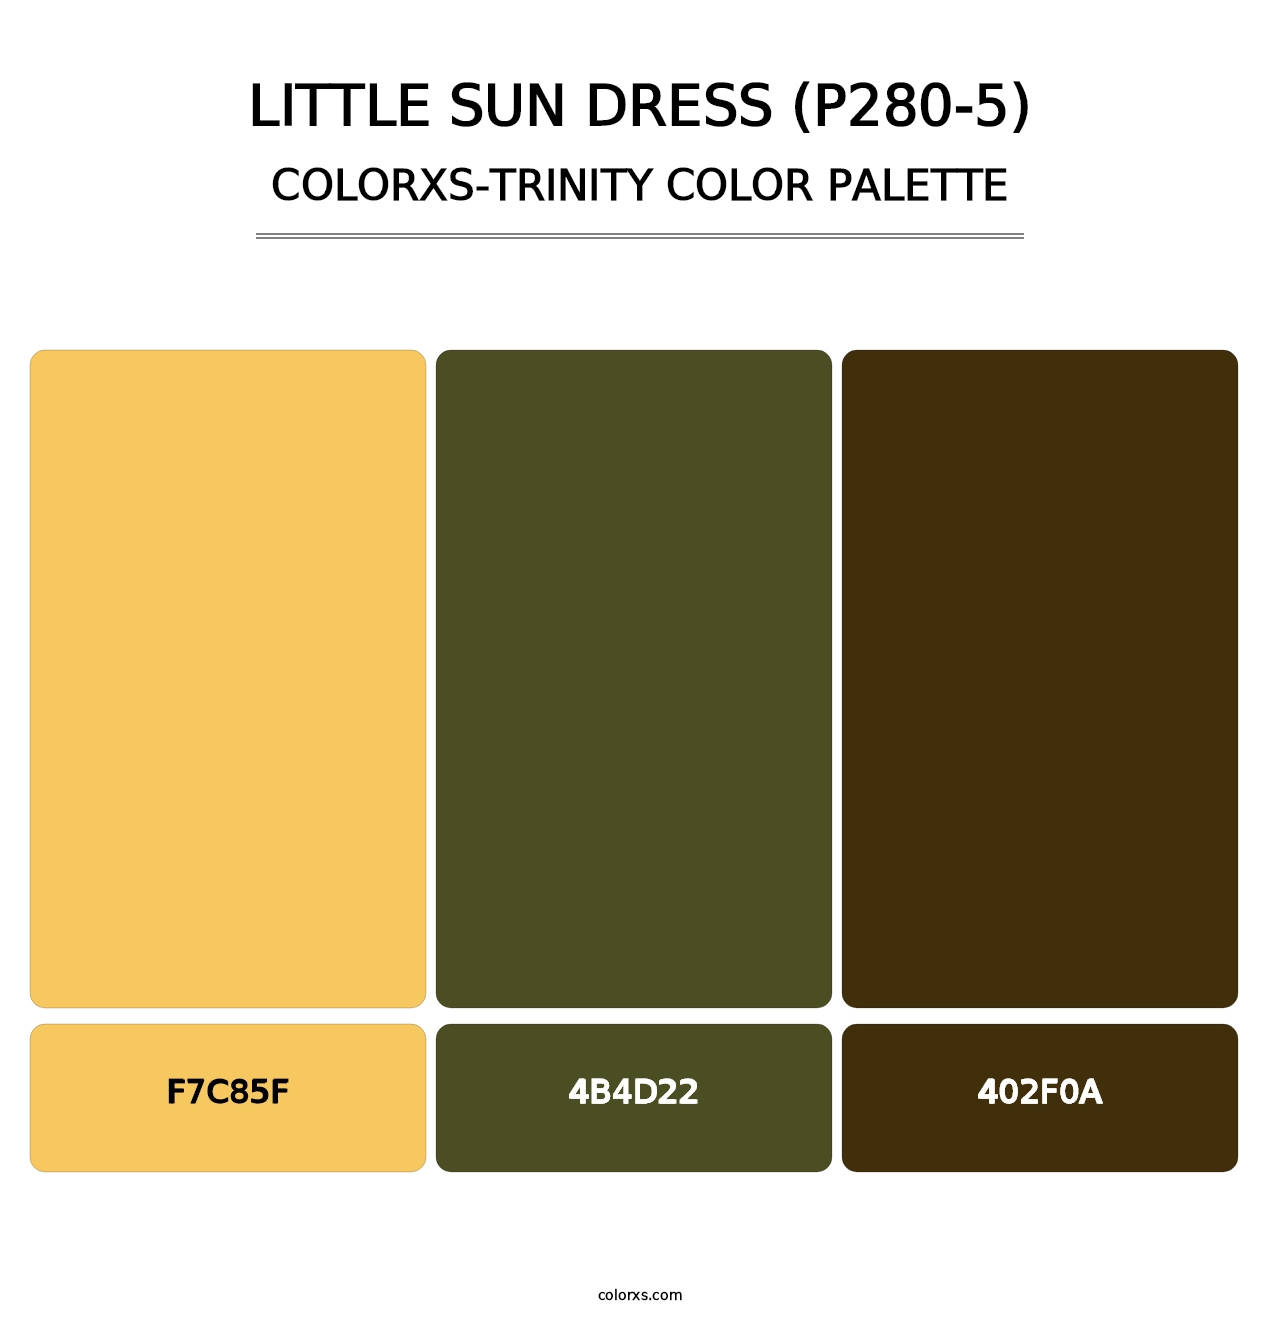 Little Sun Dress (P280-5) - Colorxs Trinity Palette